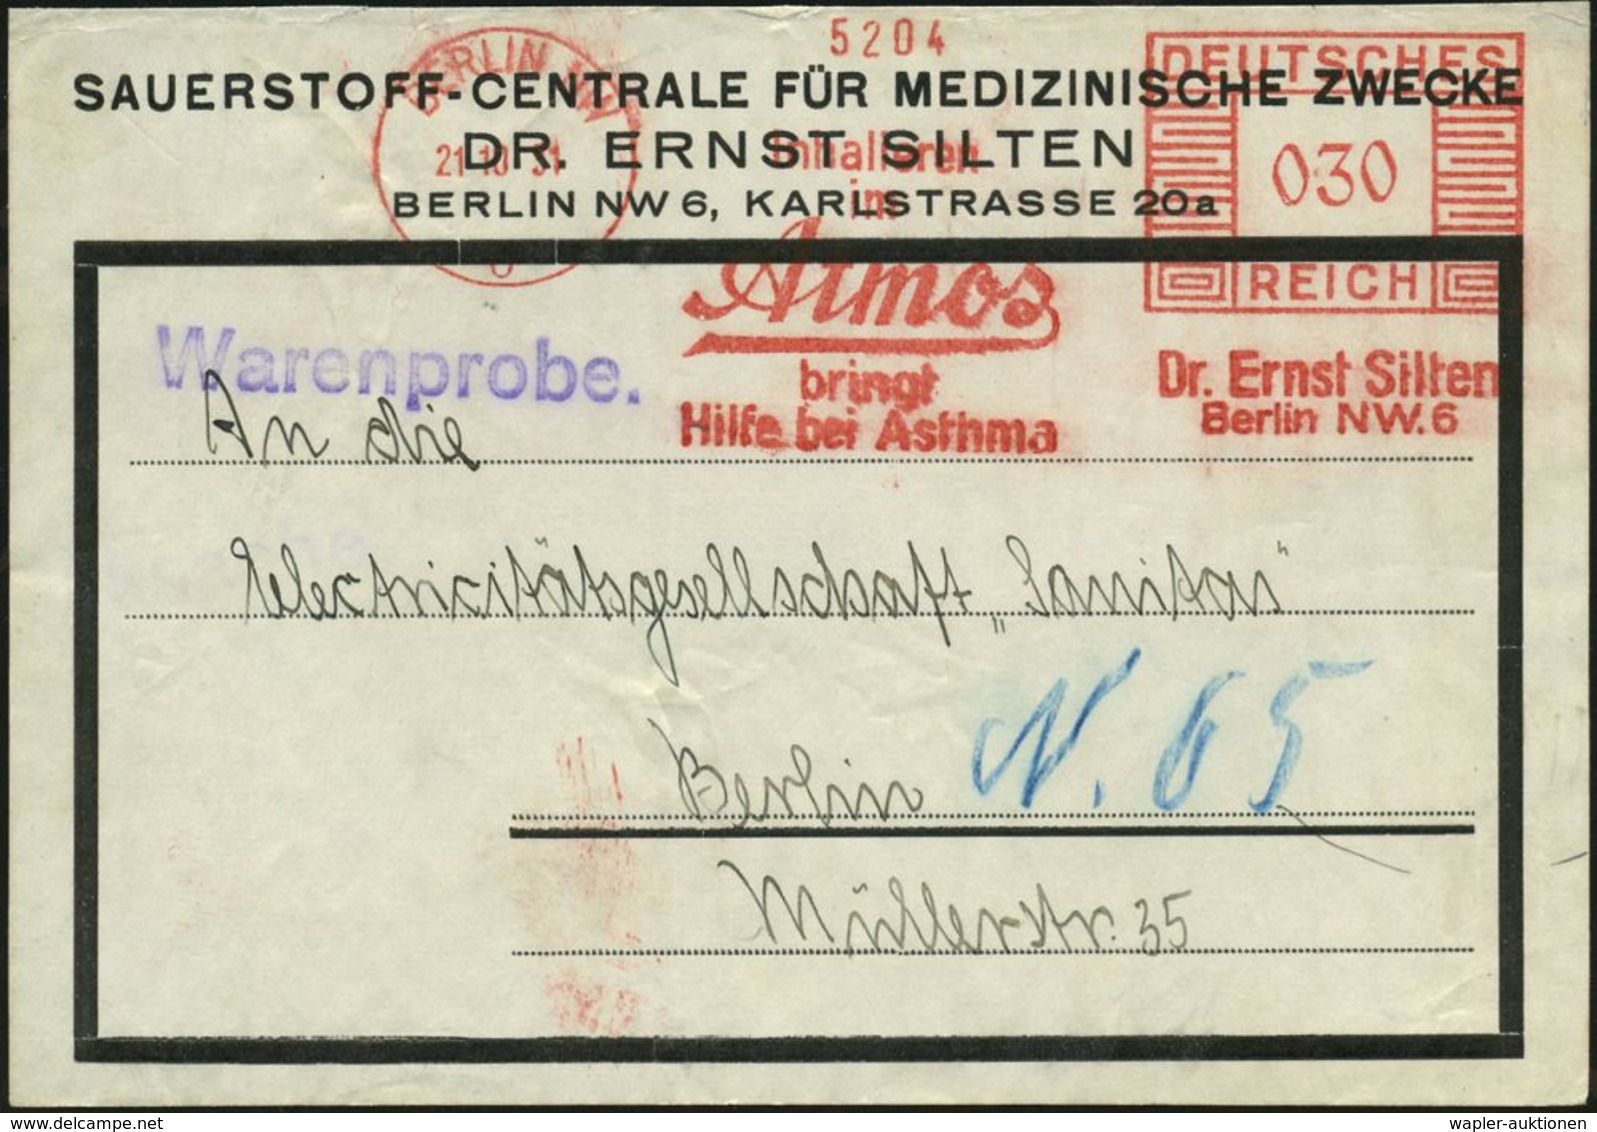 KRANKHEITEN : BERLIN NW/ 6/ ..Atmos/ Bringt/ Hilfe Bei Asthma/ Dr.Ernst Silten 1931 (21.10.) AFS 030 Pf. Auf Firmen-Adre - Disease